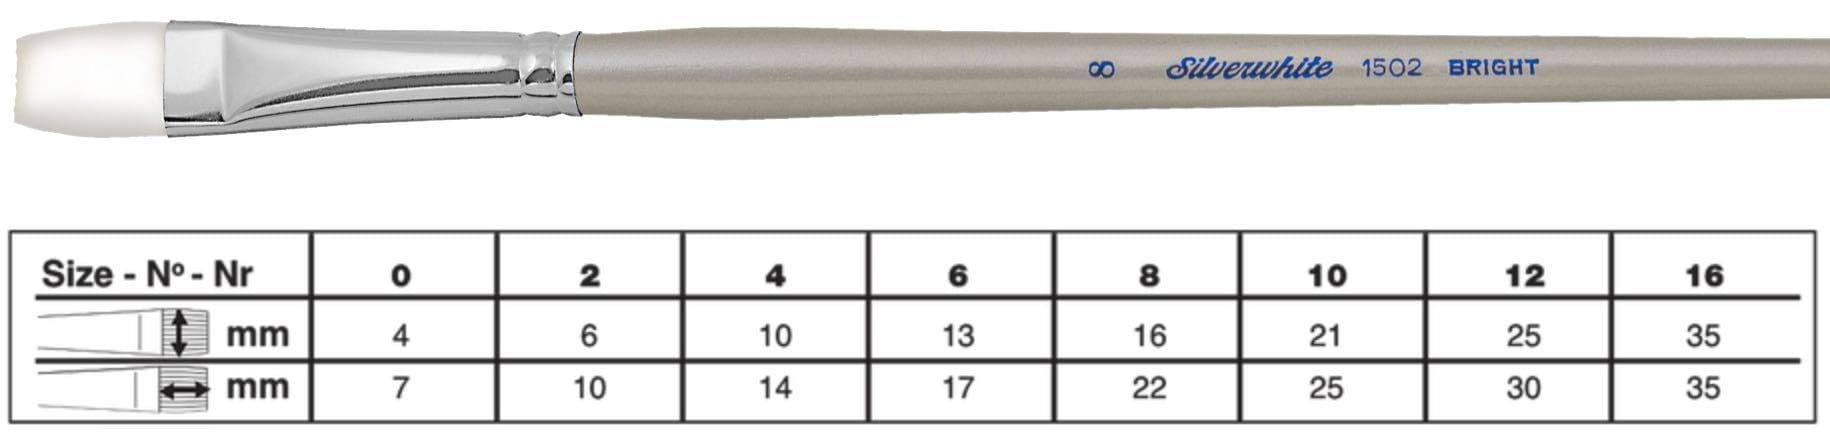 SILVER BRUSH SILVER BRUSH 6 (13mm x 17mm) Silver Brush 1502 Silverwhite Long Handle